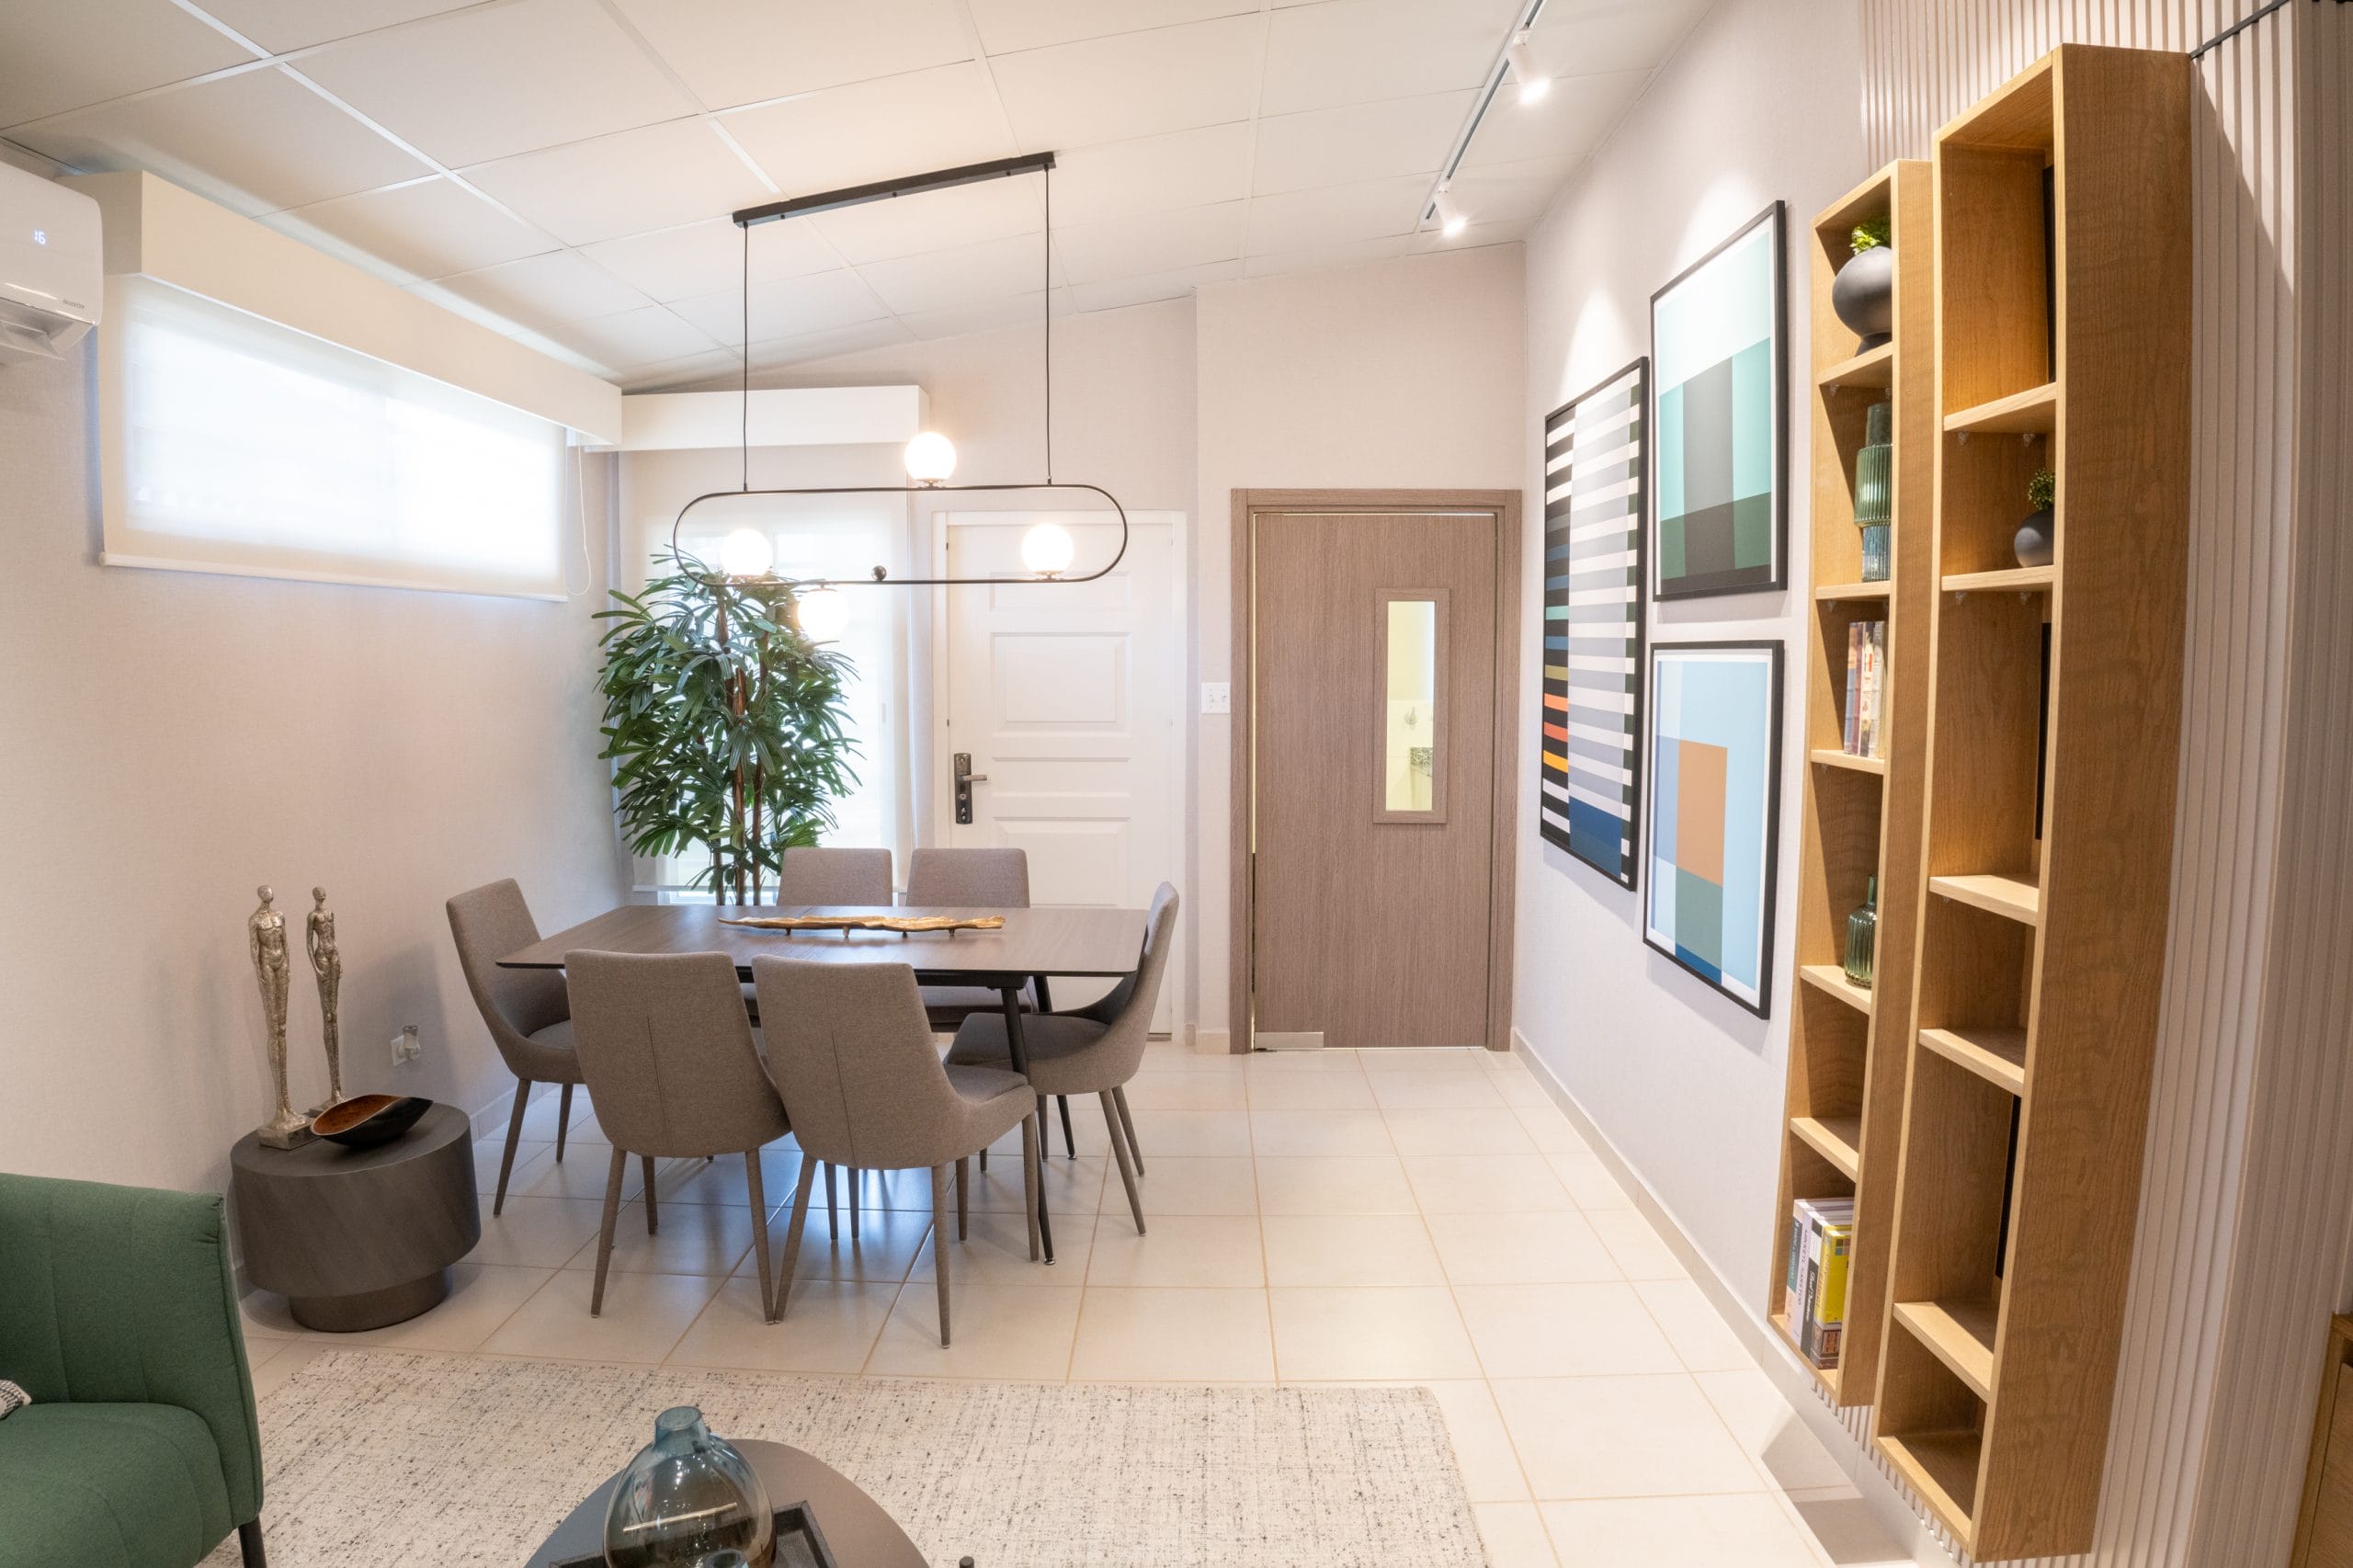 Sala comedor de concepto abierto dentro de uno de los modelos de vivienda de Brisas del Golf Arraiján.